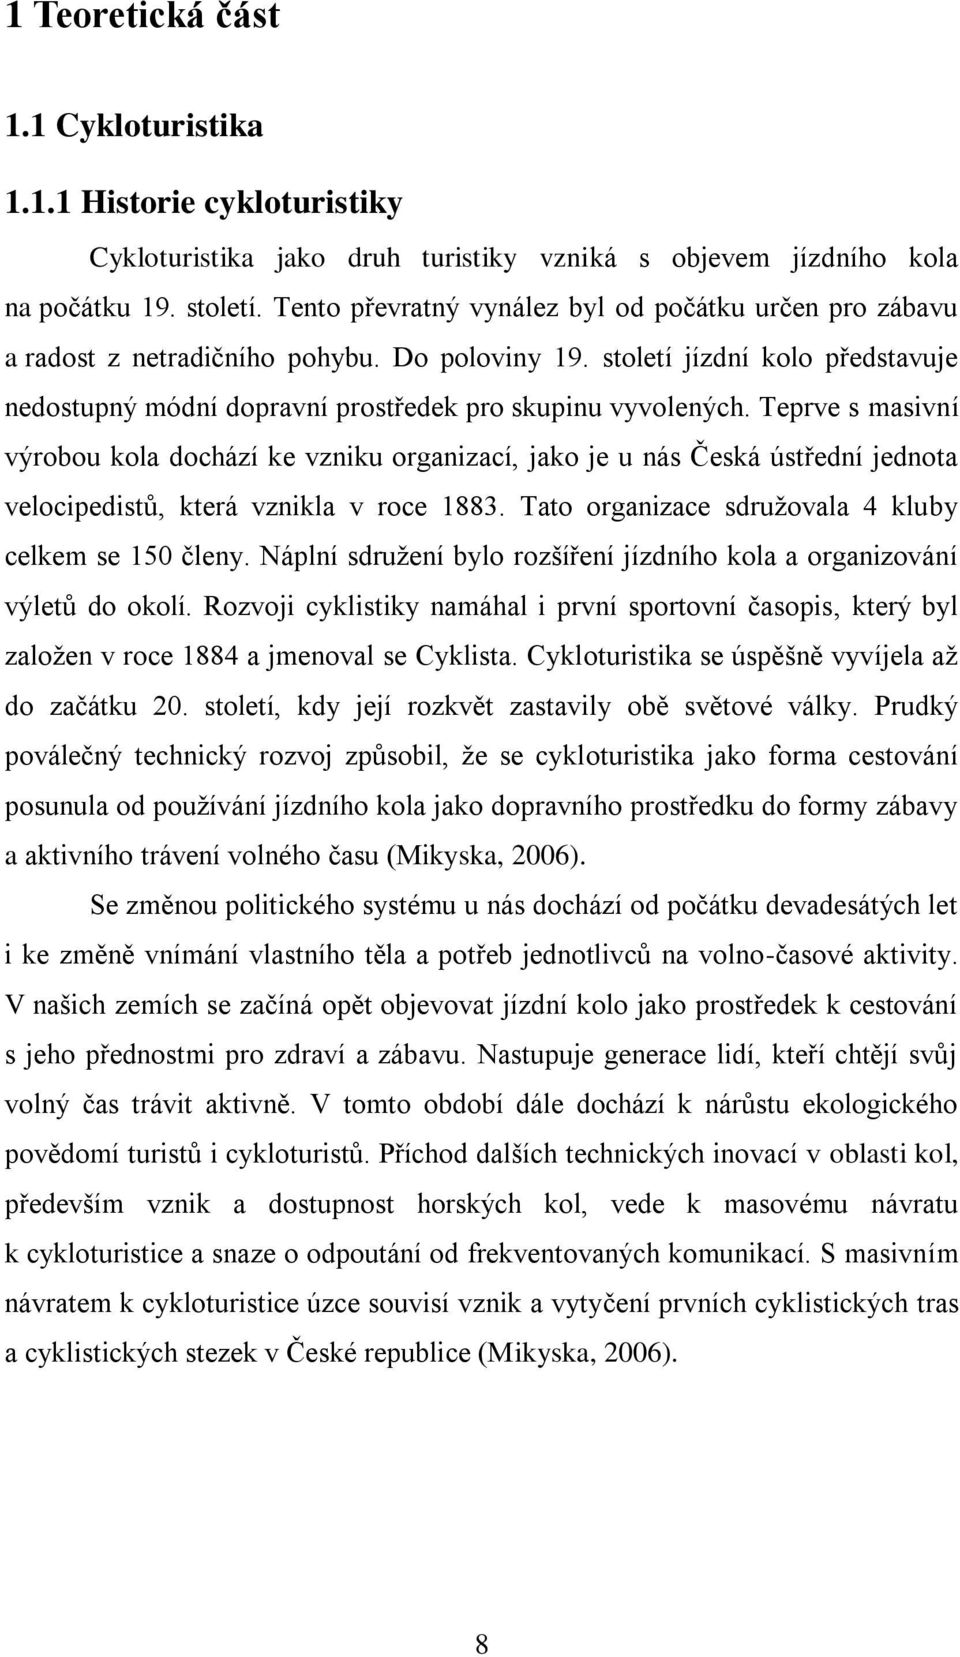 Teprve s masivní výrobou kola dochází ke vzniku organizací, jako je u nás Česká ústřední jednota velocipedistů, která vznikla v roce 1883. Tato organizace sdružovala 4 kluby celkem se 150 členy.